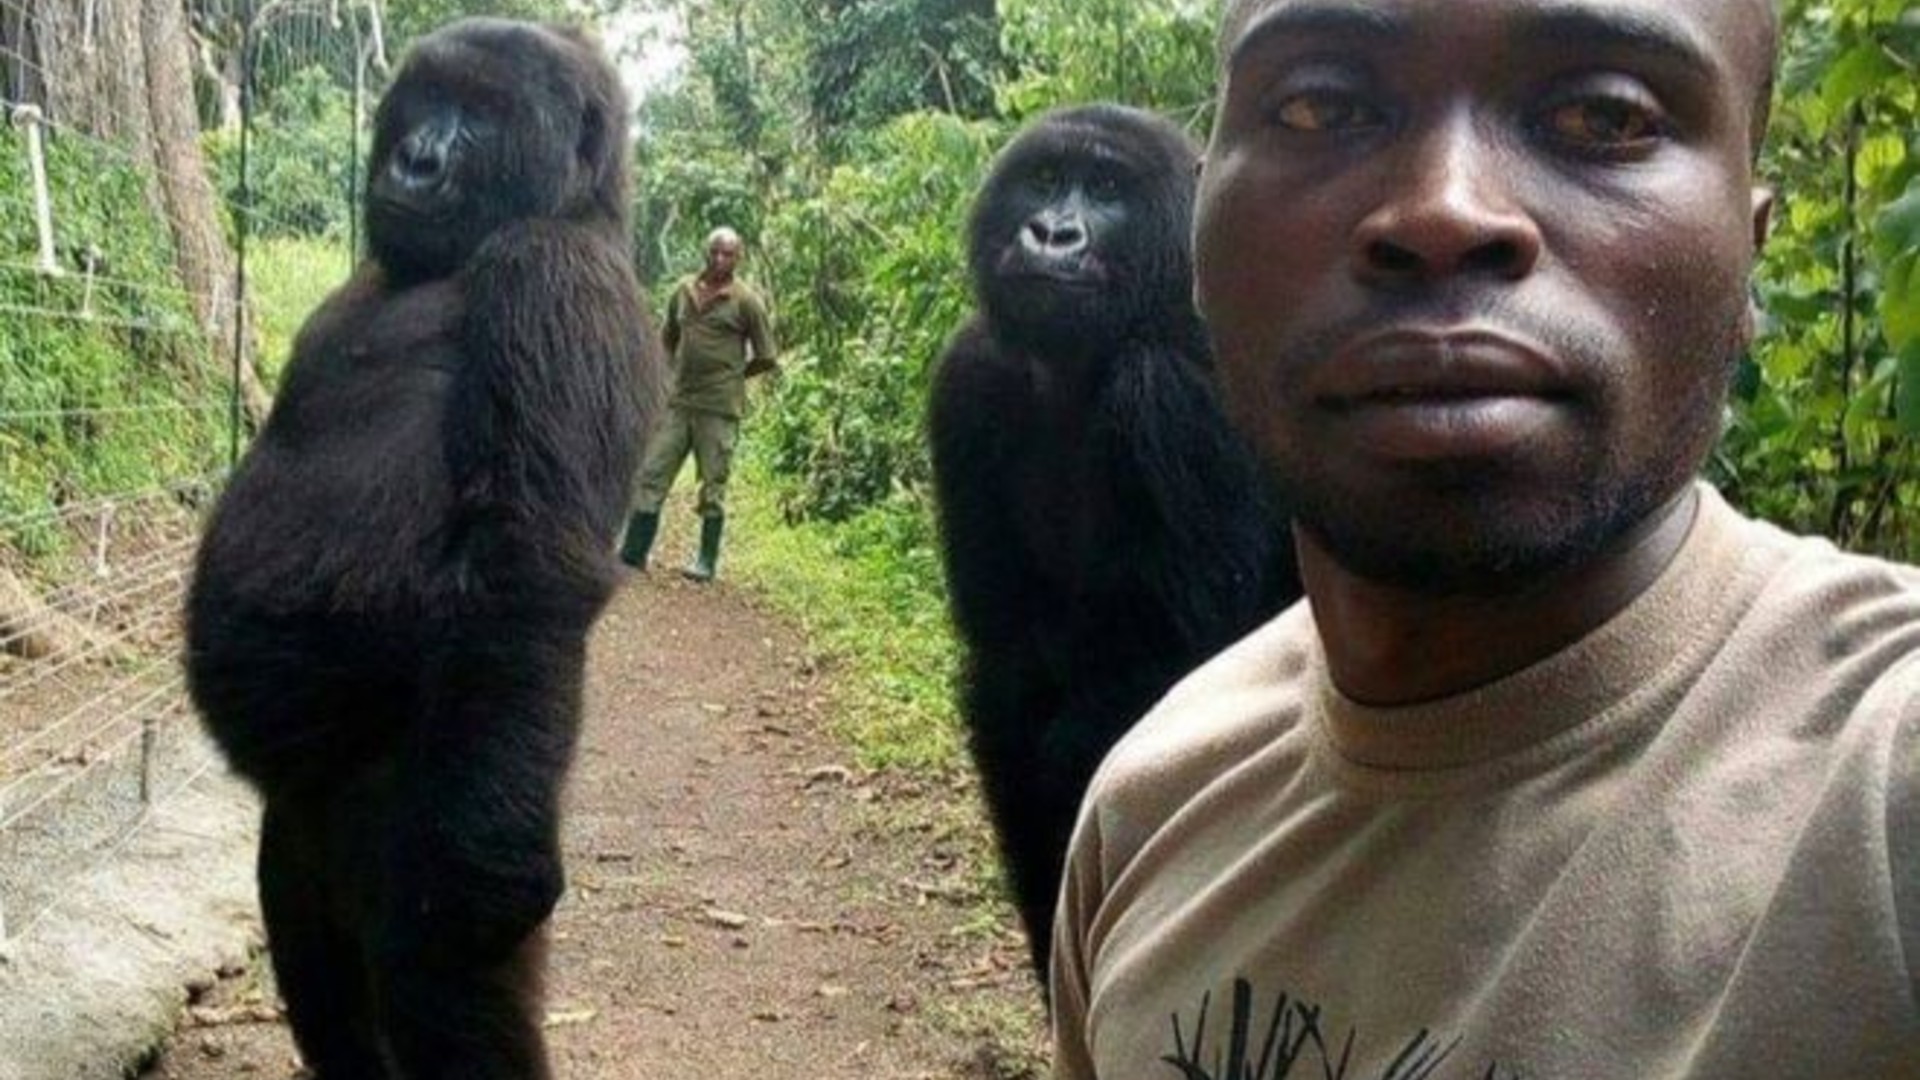 El guardabosques explica cómo se hizo el selfie con los gorilas